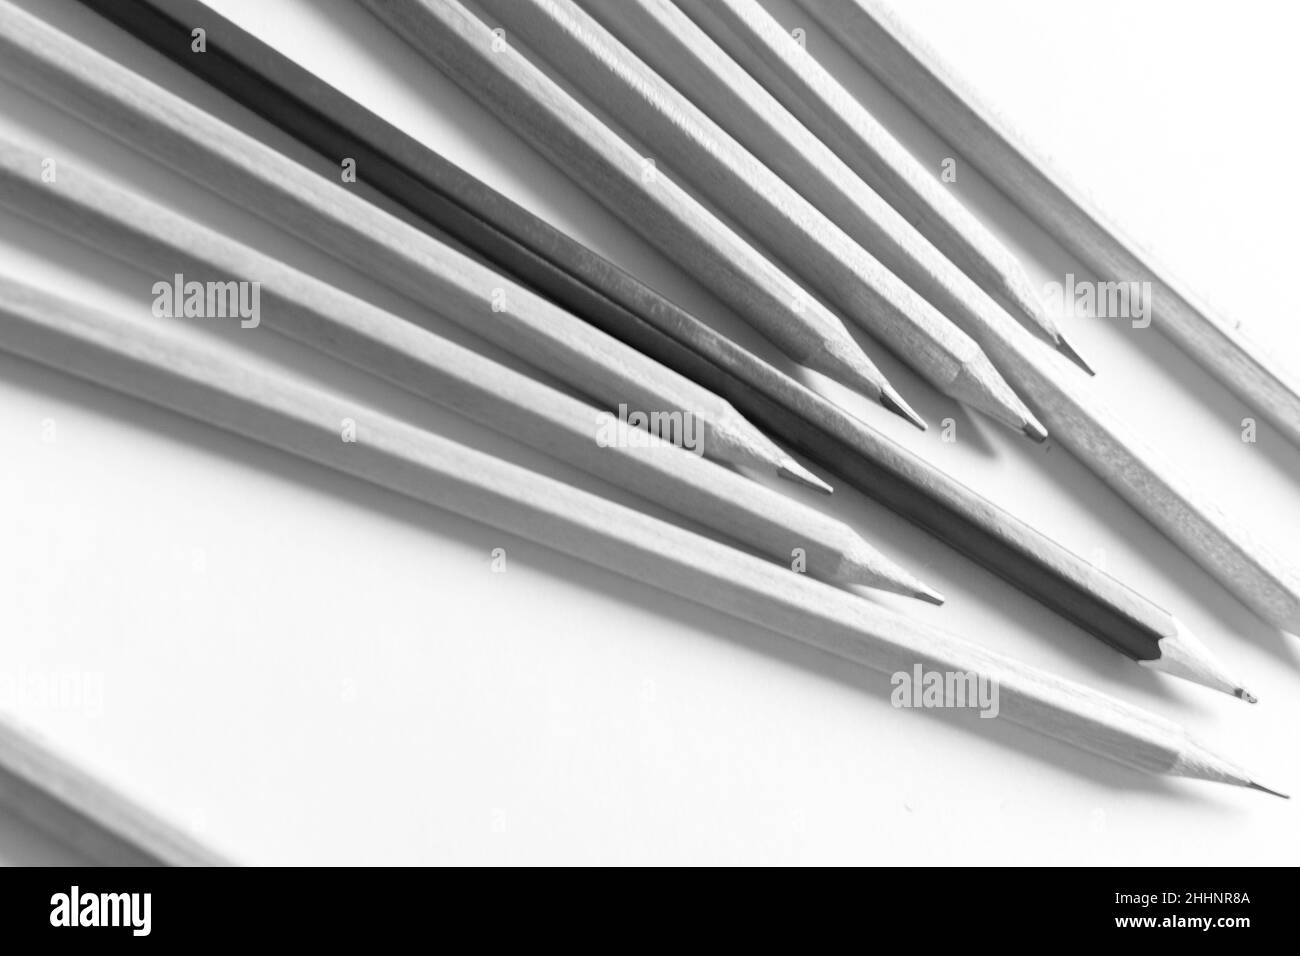 photo noir et blanc de crayons en bois sur fond uni Banque D'Images